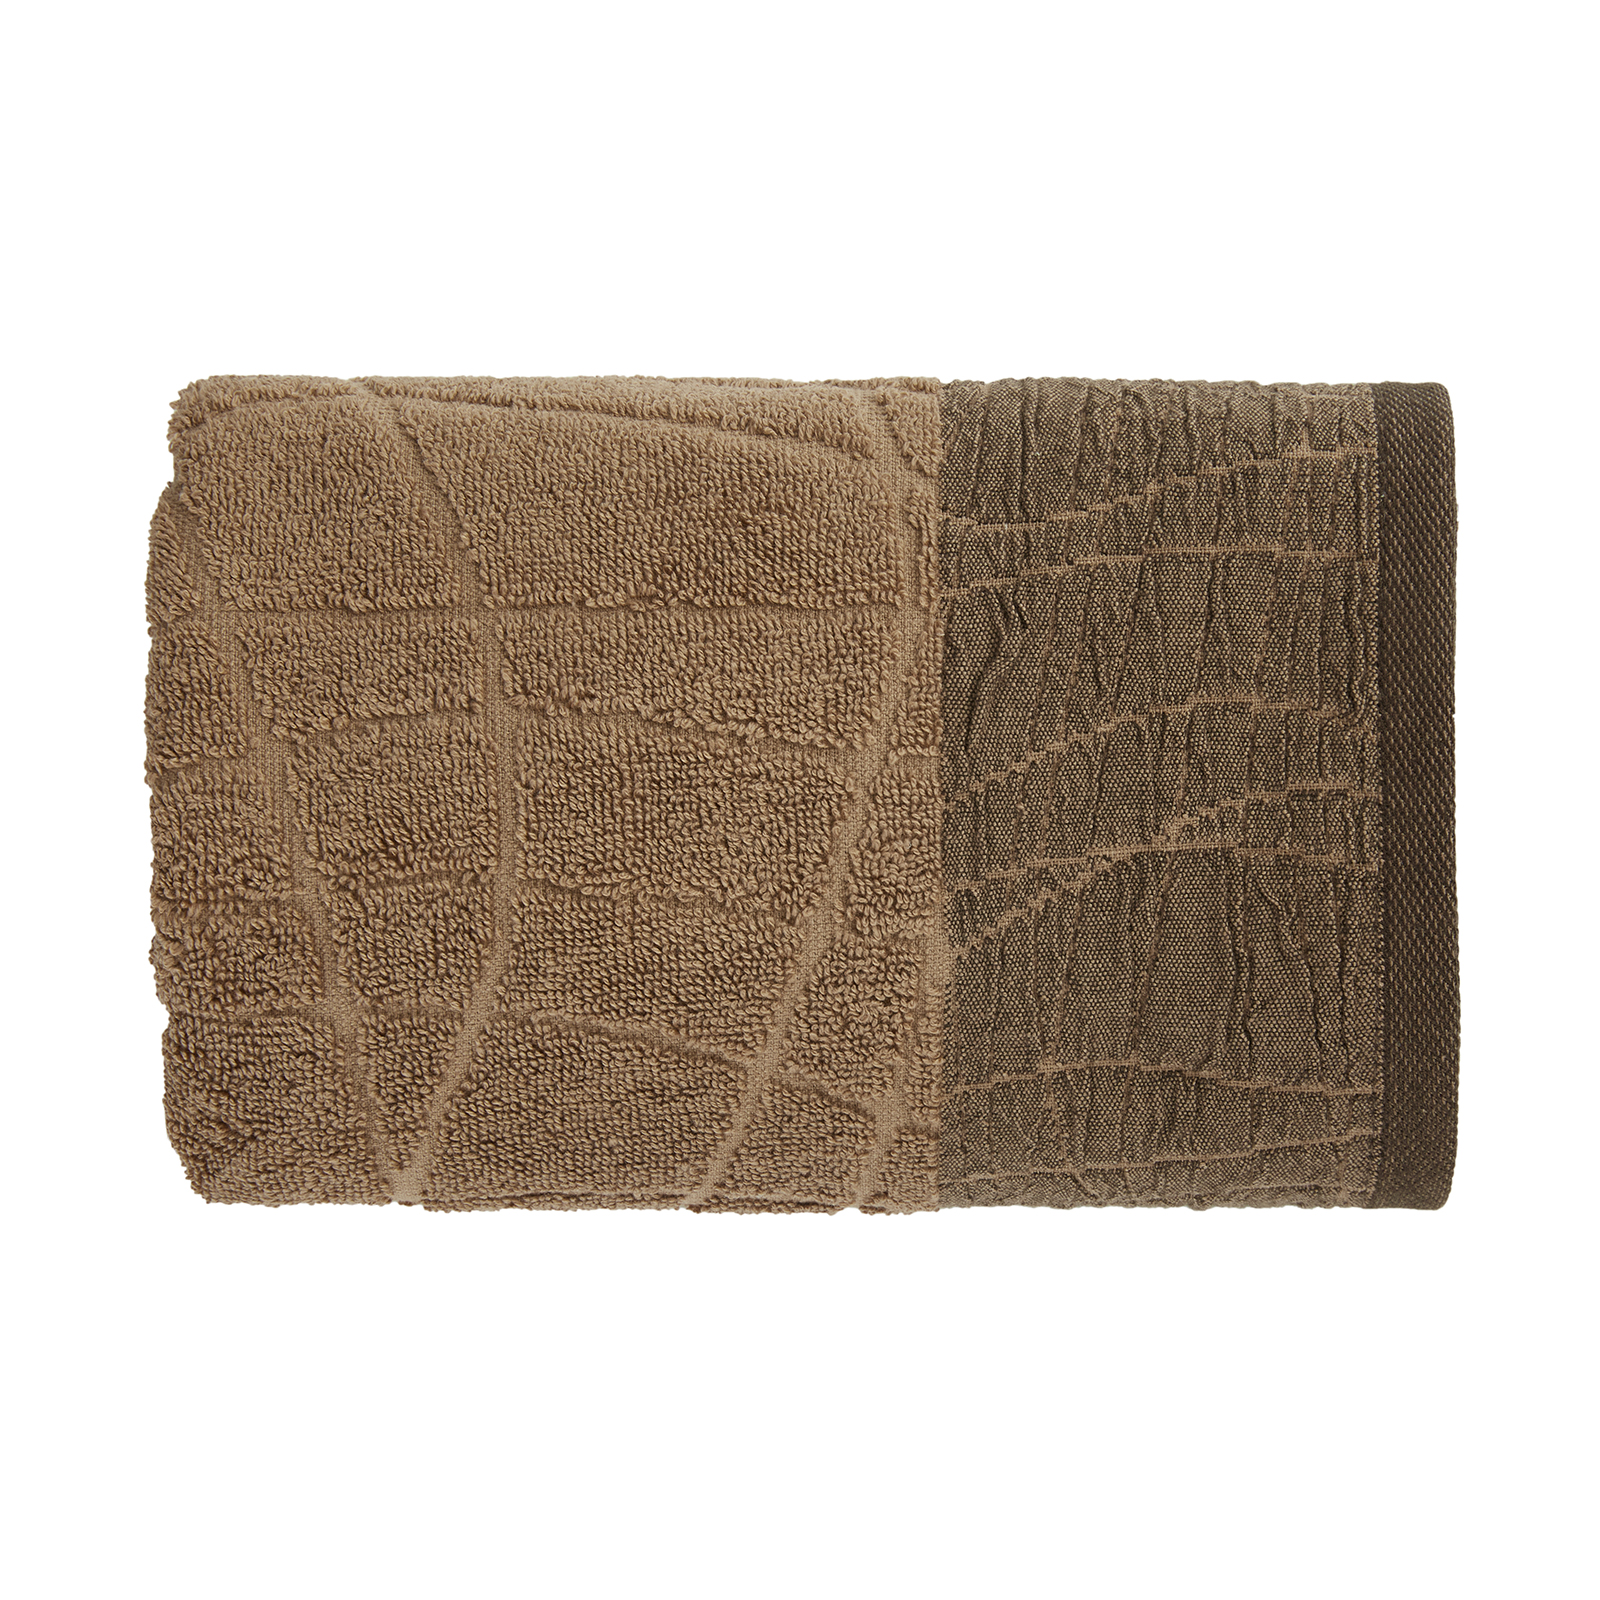 Полотенце махровое Alzatine полотенце арт 03 0685 коричневый р 70х140